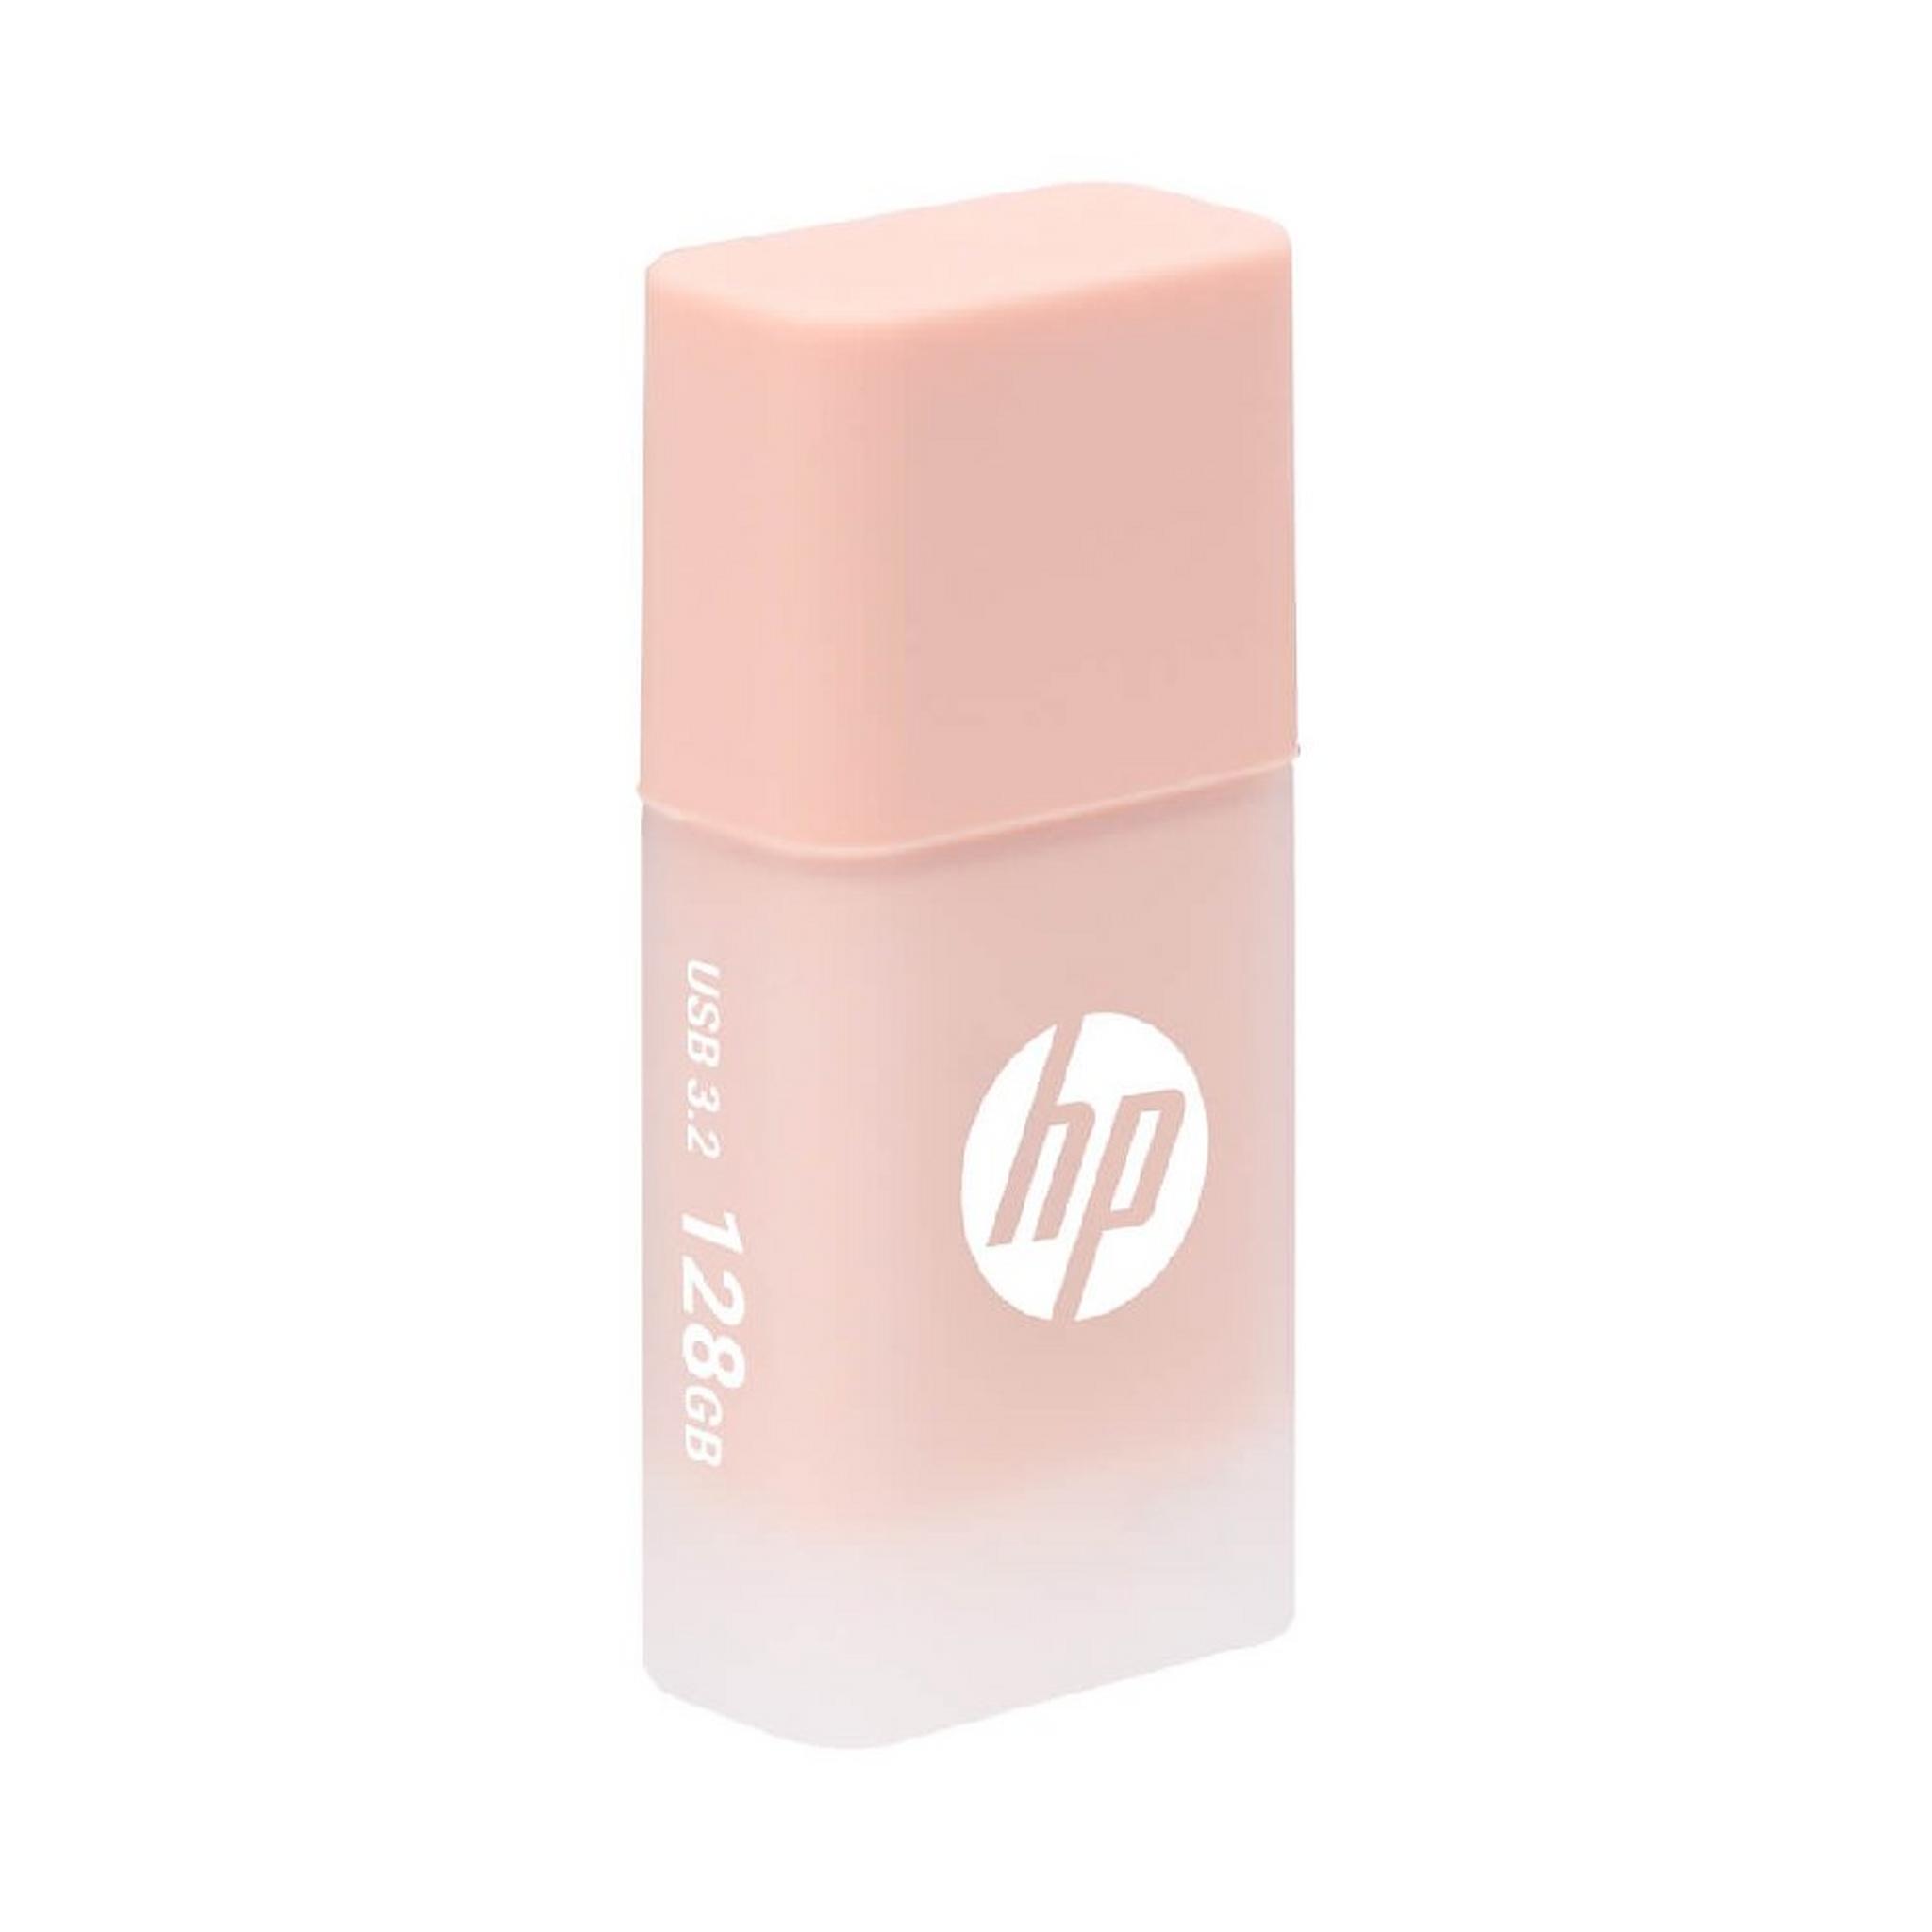 HP x768 USB 3.2 Flash Drive, 128 GB, HPFD768K-128 - Beige Rose